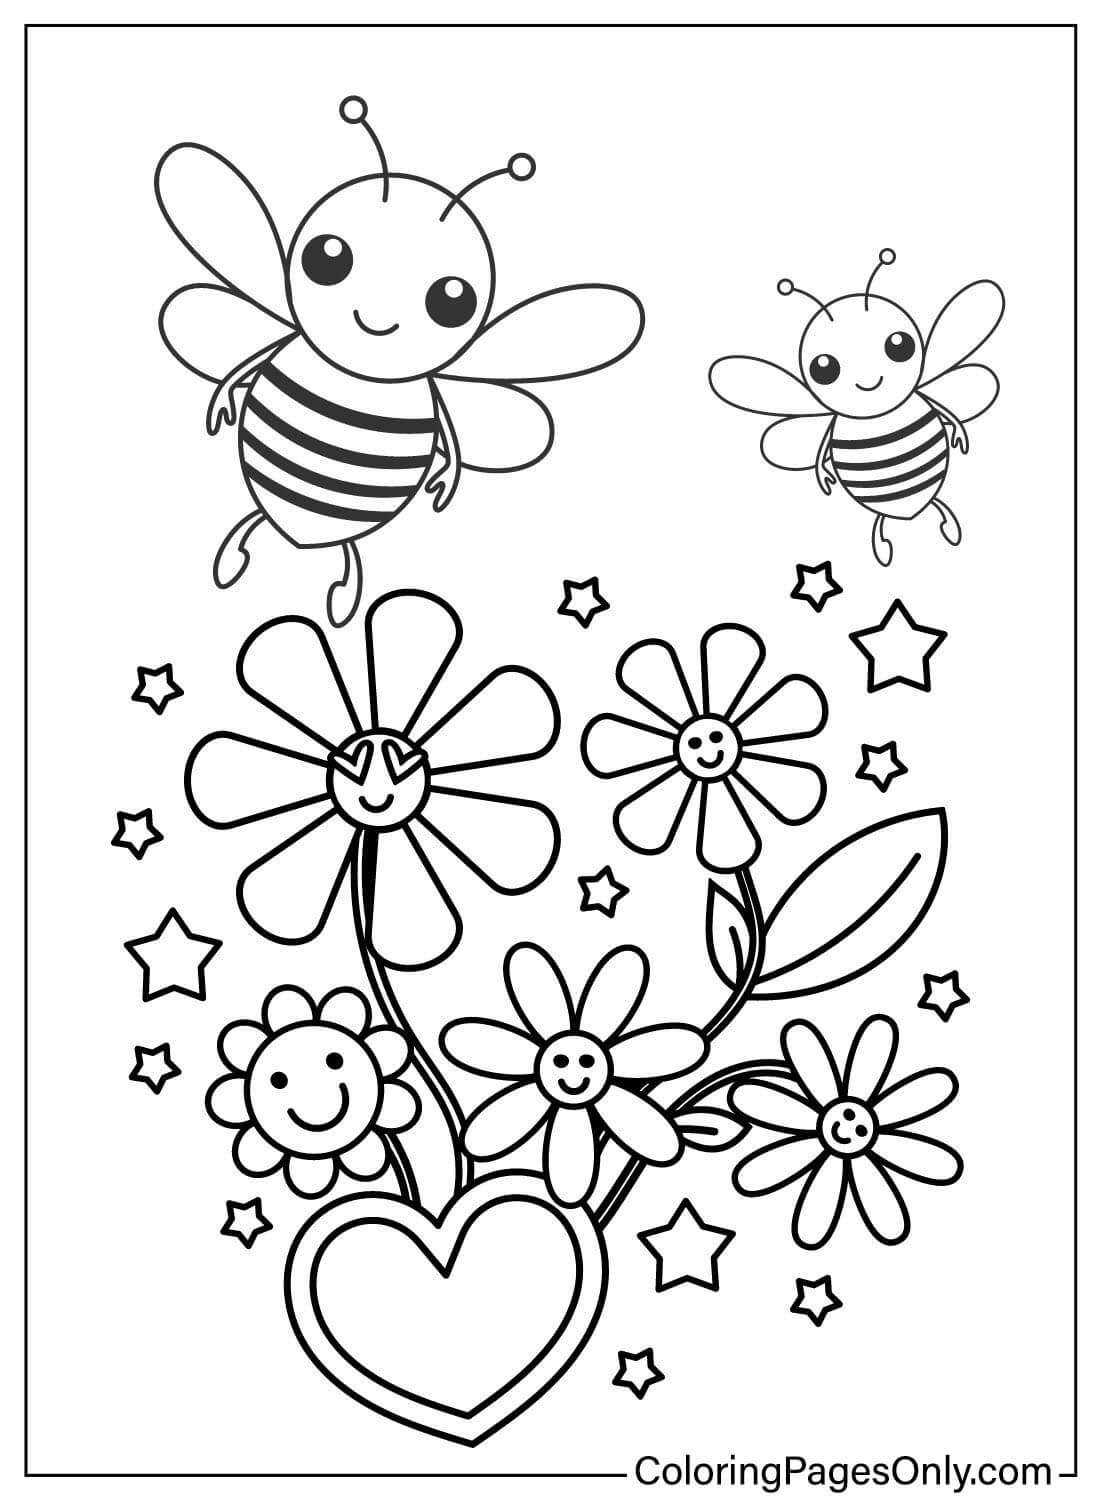 Bijen kleurboek